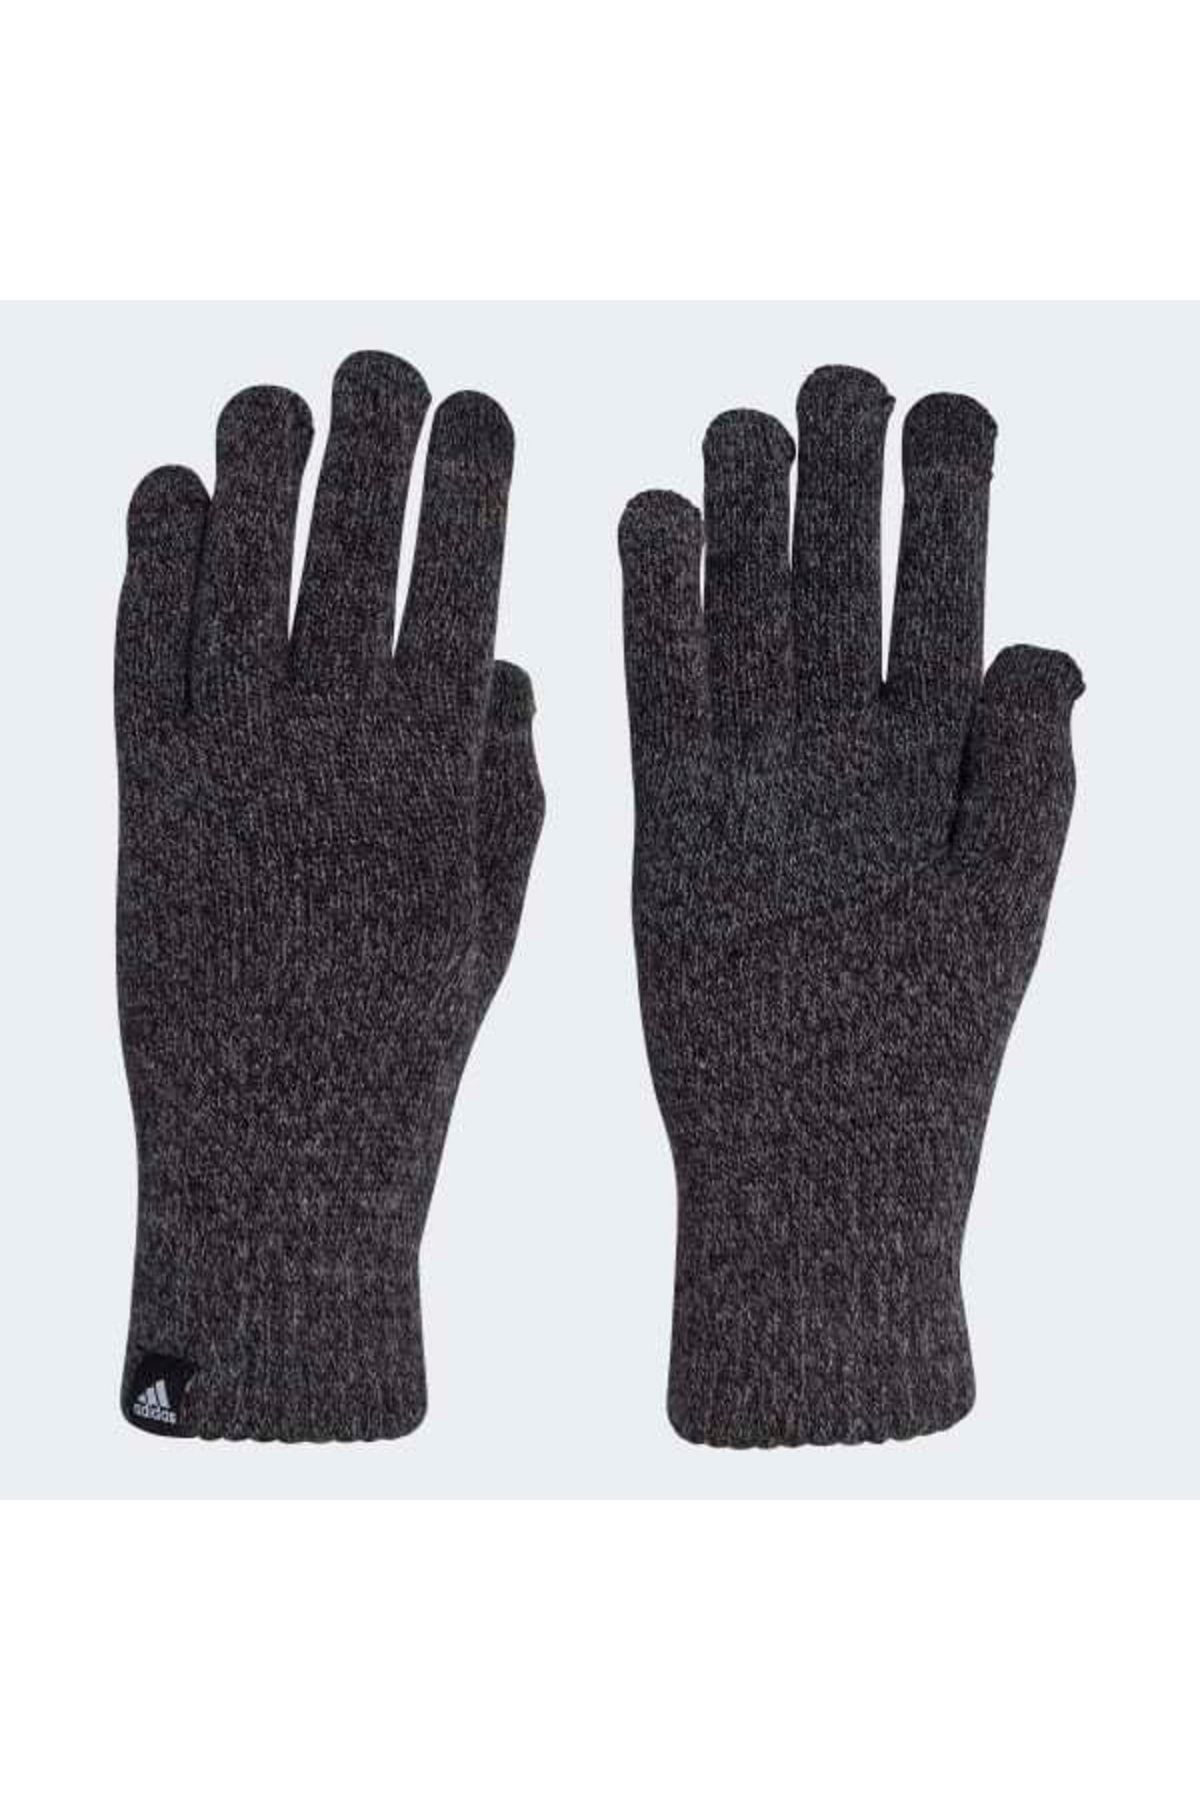 adidas Knit Glove Cond Unisex Eldiven Gri Br9919